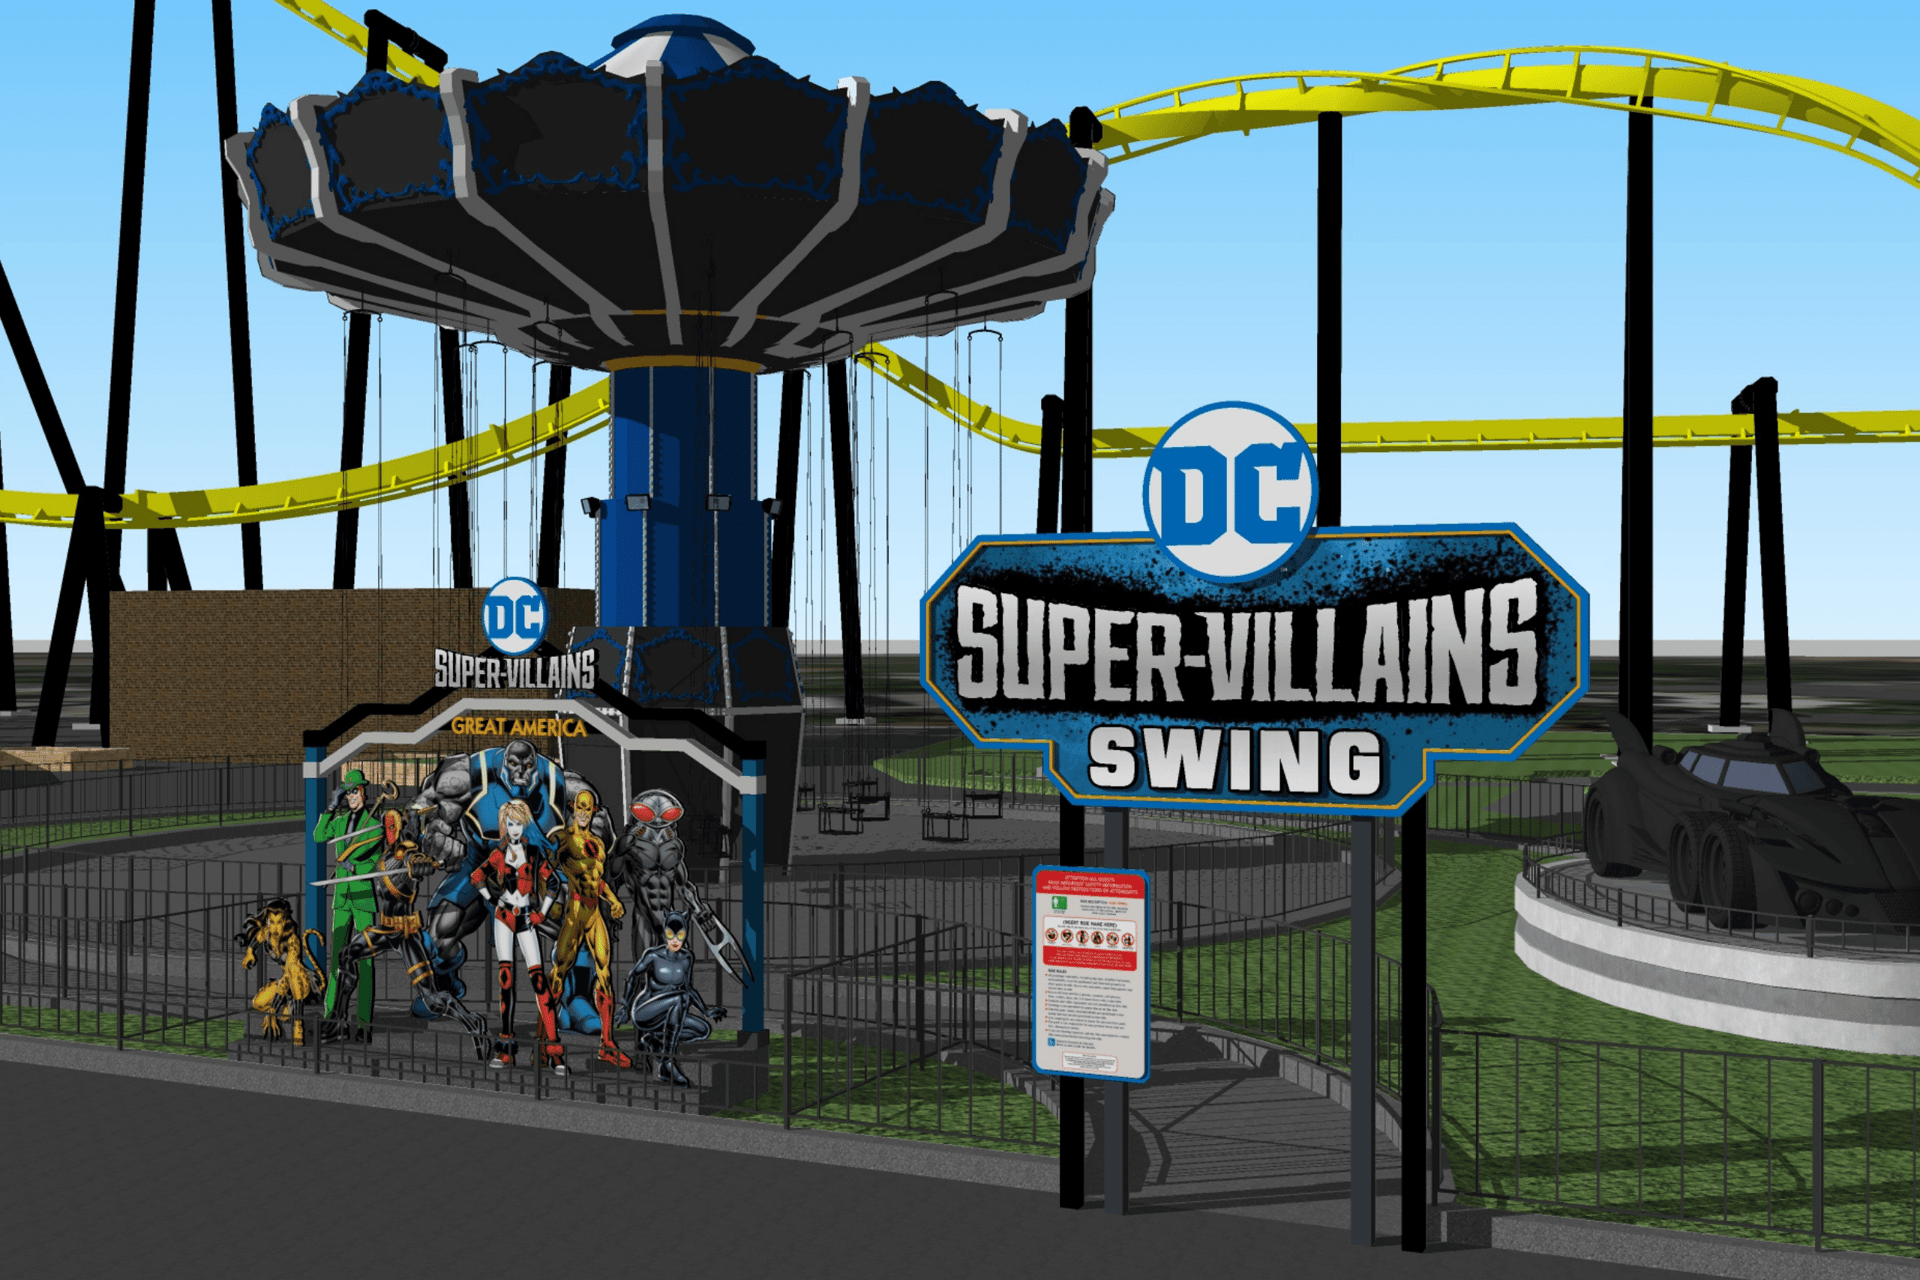 DC-Super-Villians-Swing-min.png